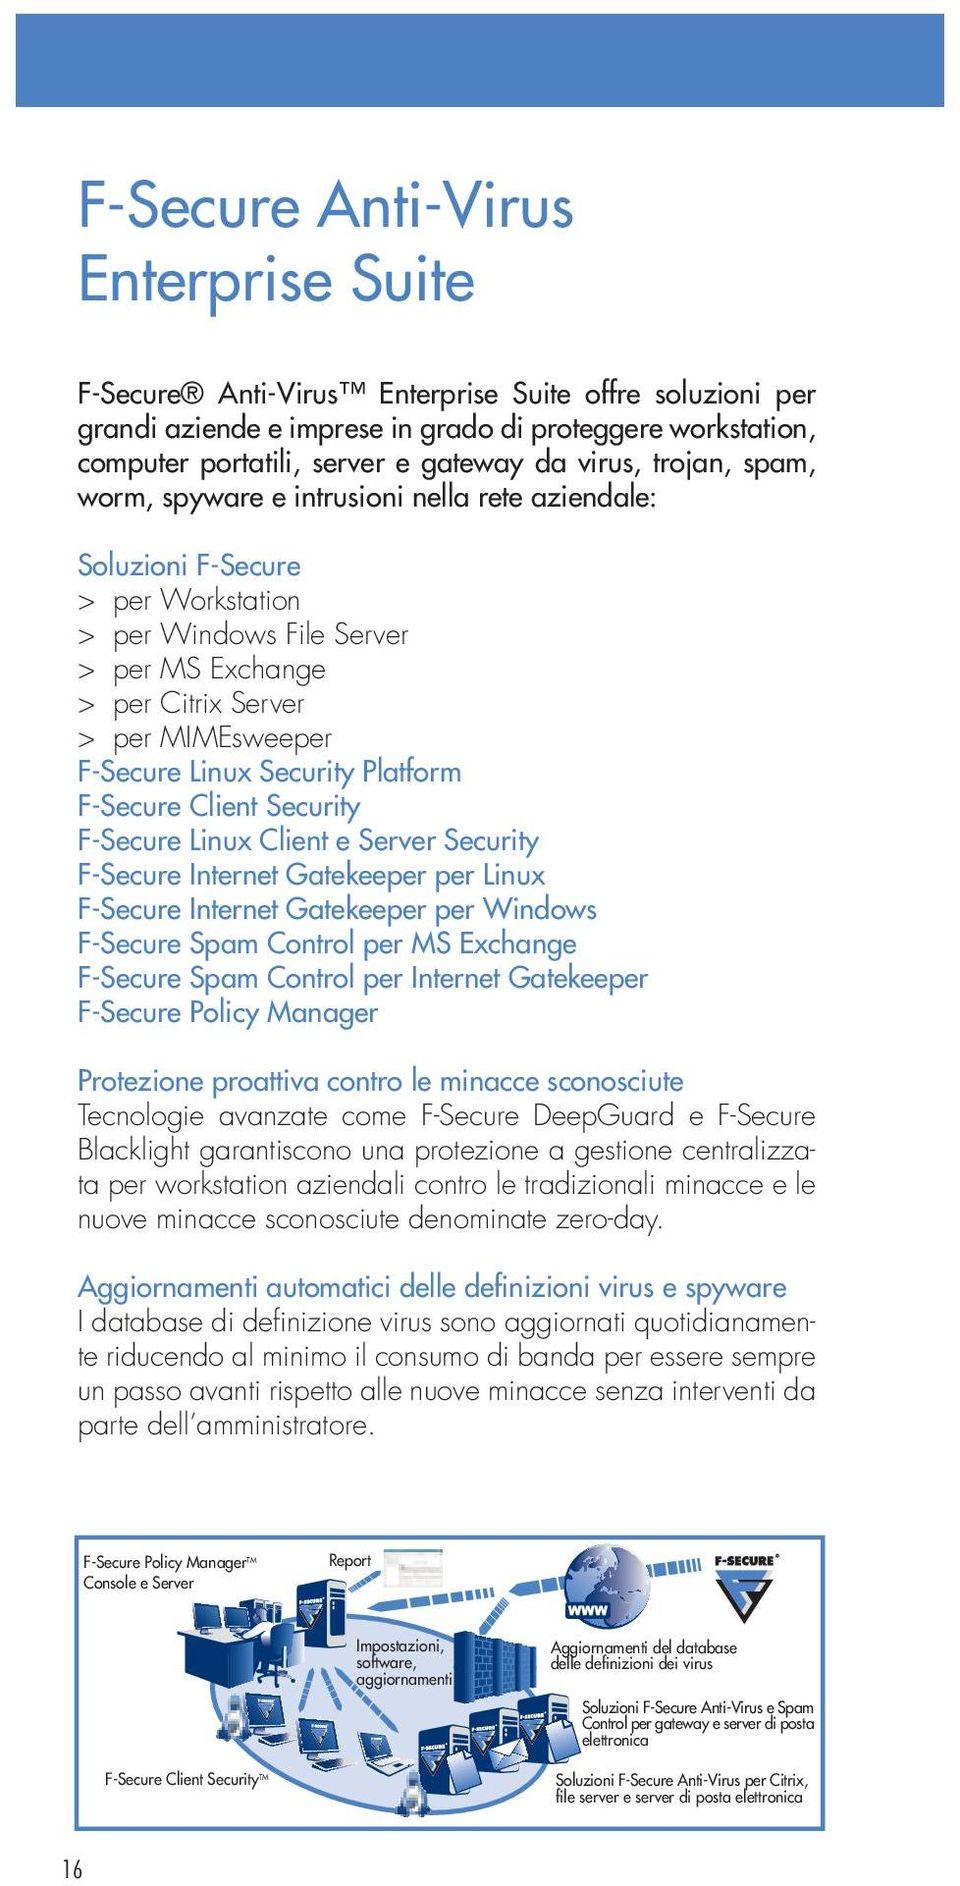 Linux Security Platform F-Secure Client Security F-Secure Linux Client e Server Security F-Secure Internet Gatekeeper per Linux F-Secure Internet Gatekeeper per Windows F-Secure Spam Control per MS